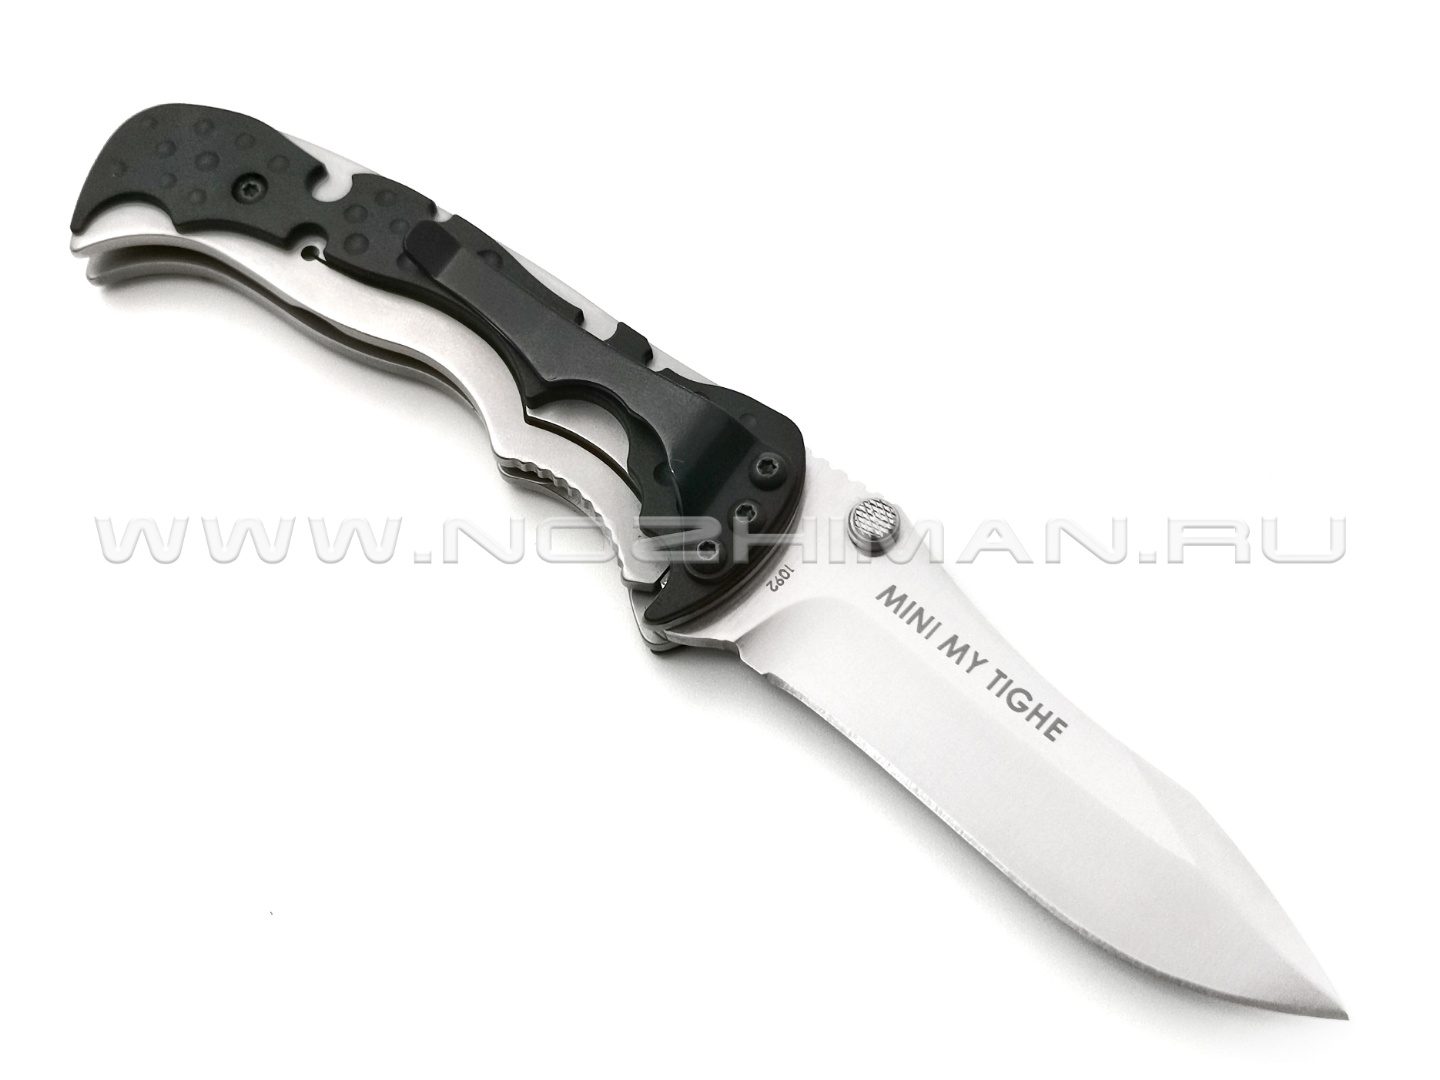 Нож CRKT Mini My Tighe 1092 сталь 1.4116, рукоять Glass Reinforced Nylon